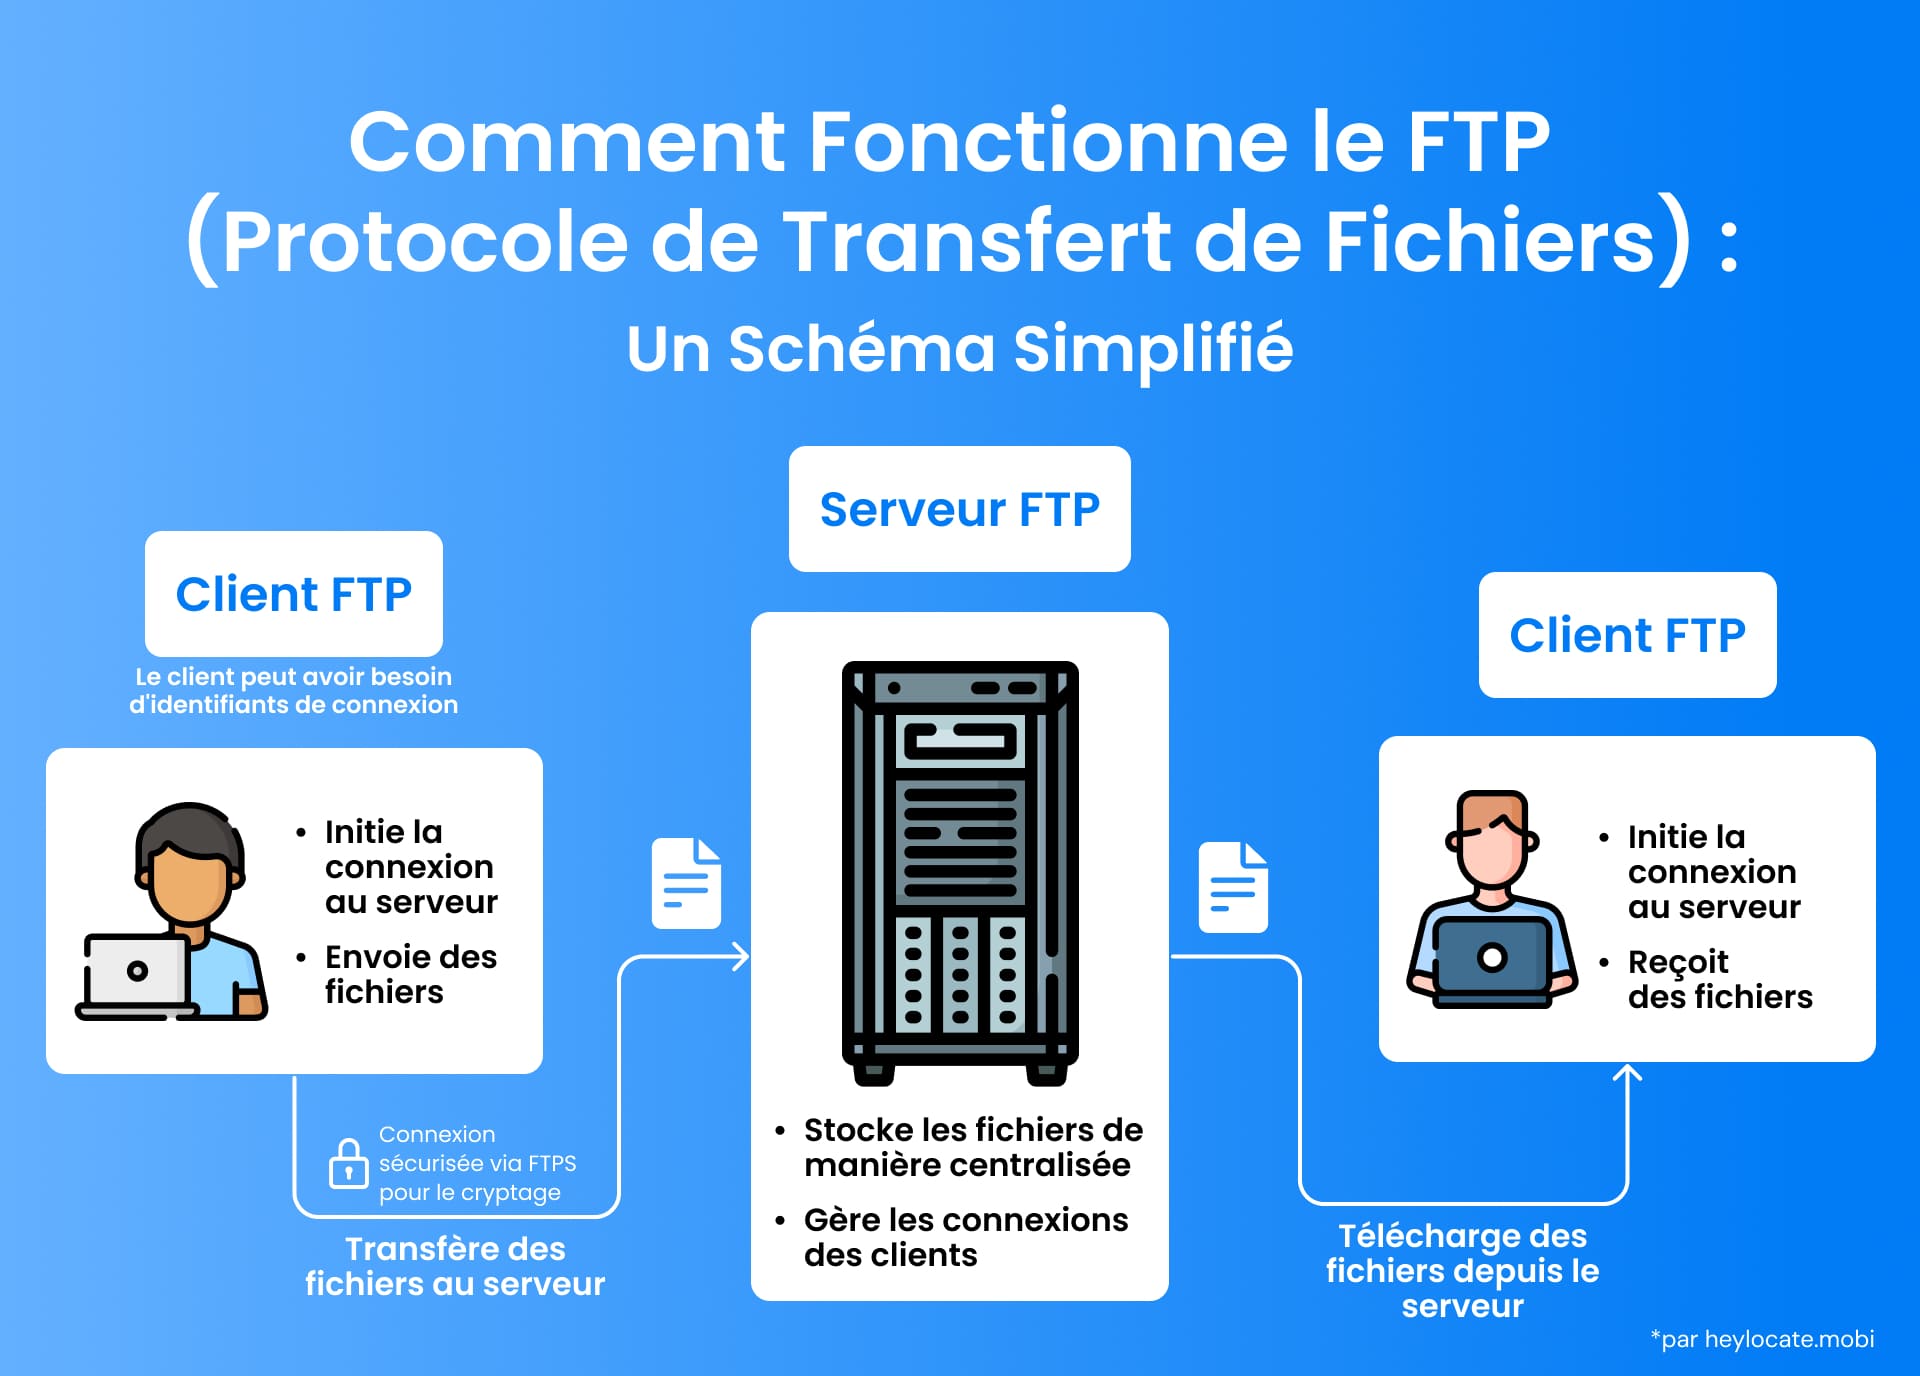 Une illustration de la façon dont fonctionne FTP, montrant comment un client FTP envoie des fichiers à travers un serveur FTP central et un autre client FTP les reçoit